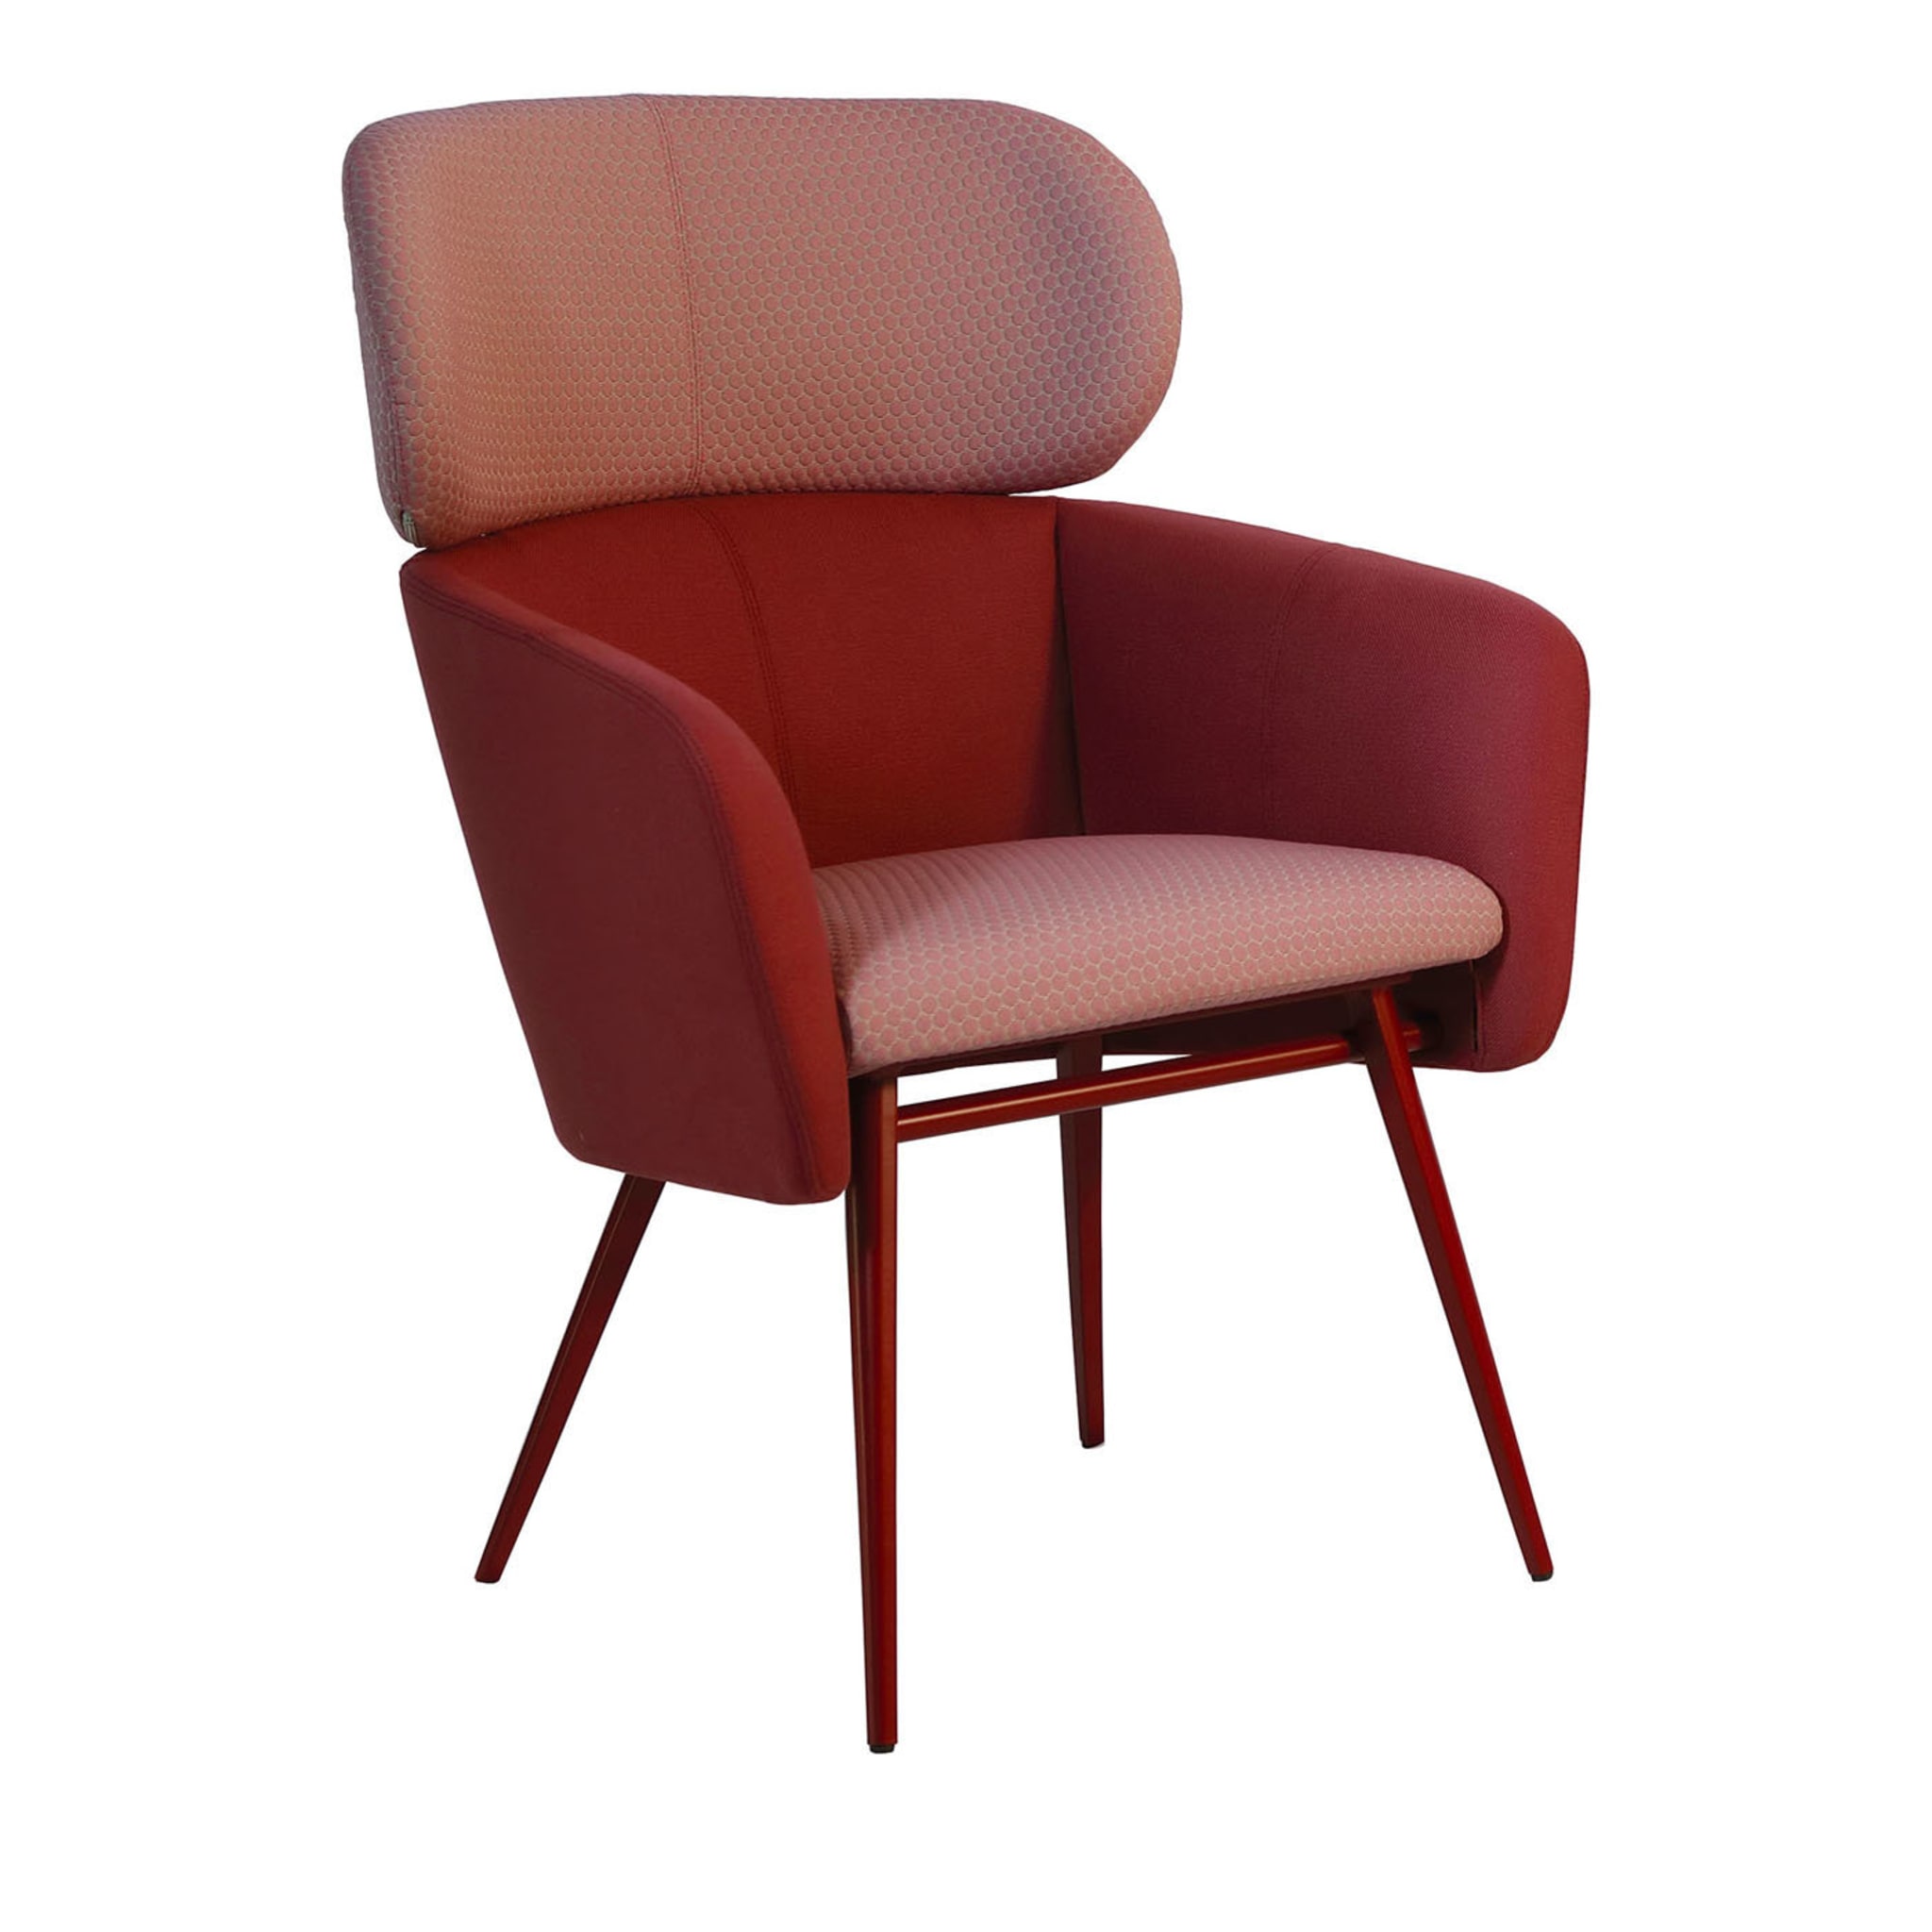 Balù XL Met Burgundy Chair By Emilio Nanni - Main view